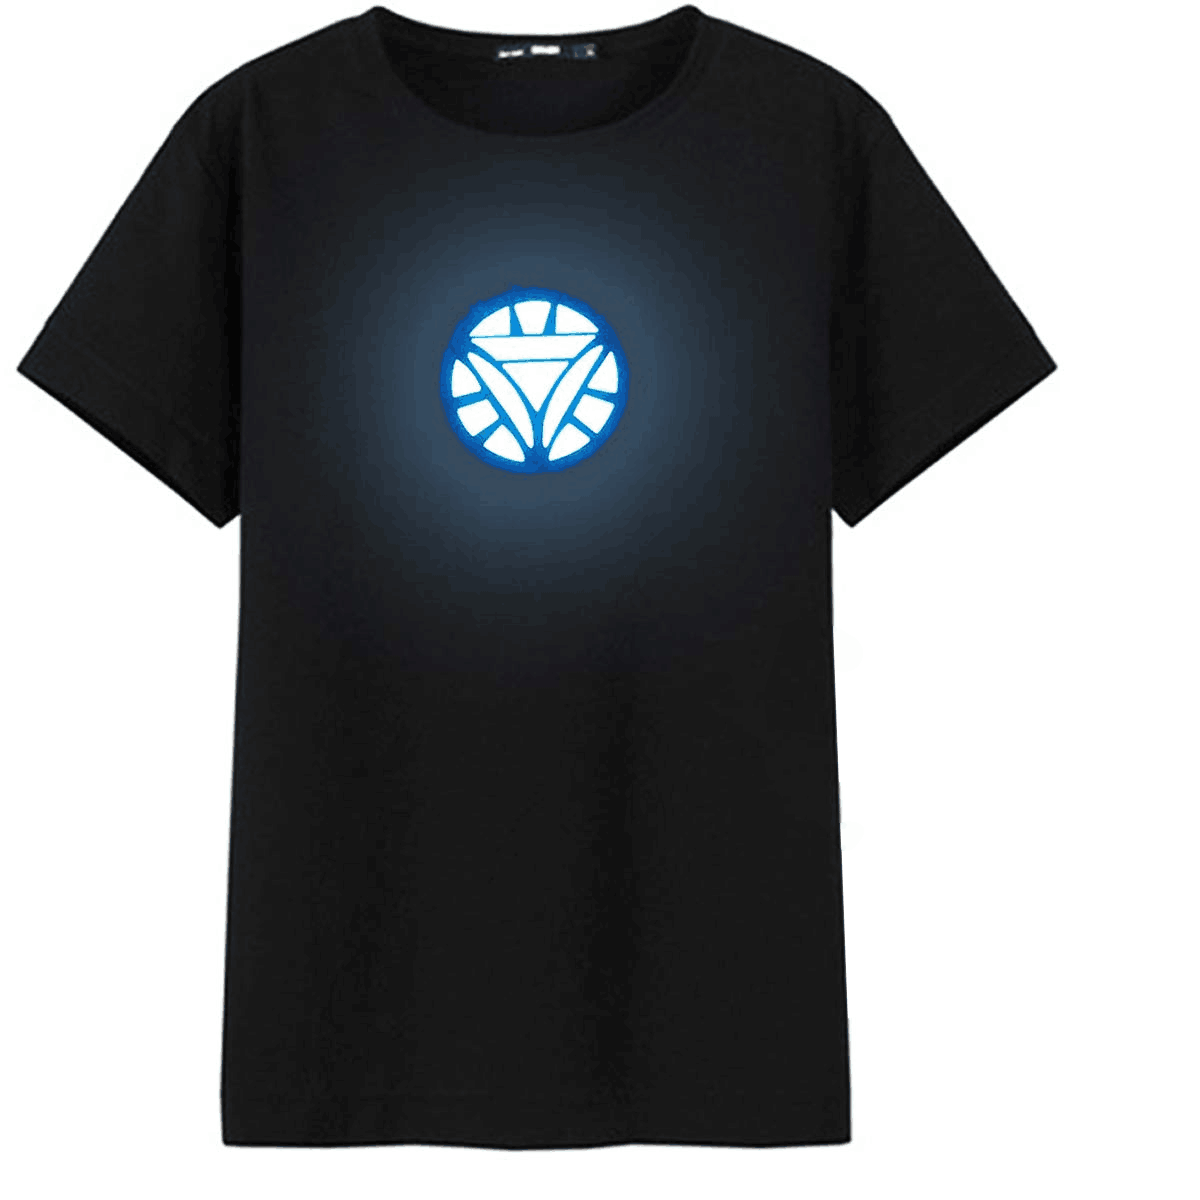 LED Voice Control T-Shirt